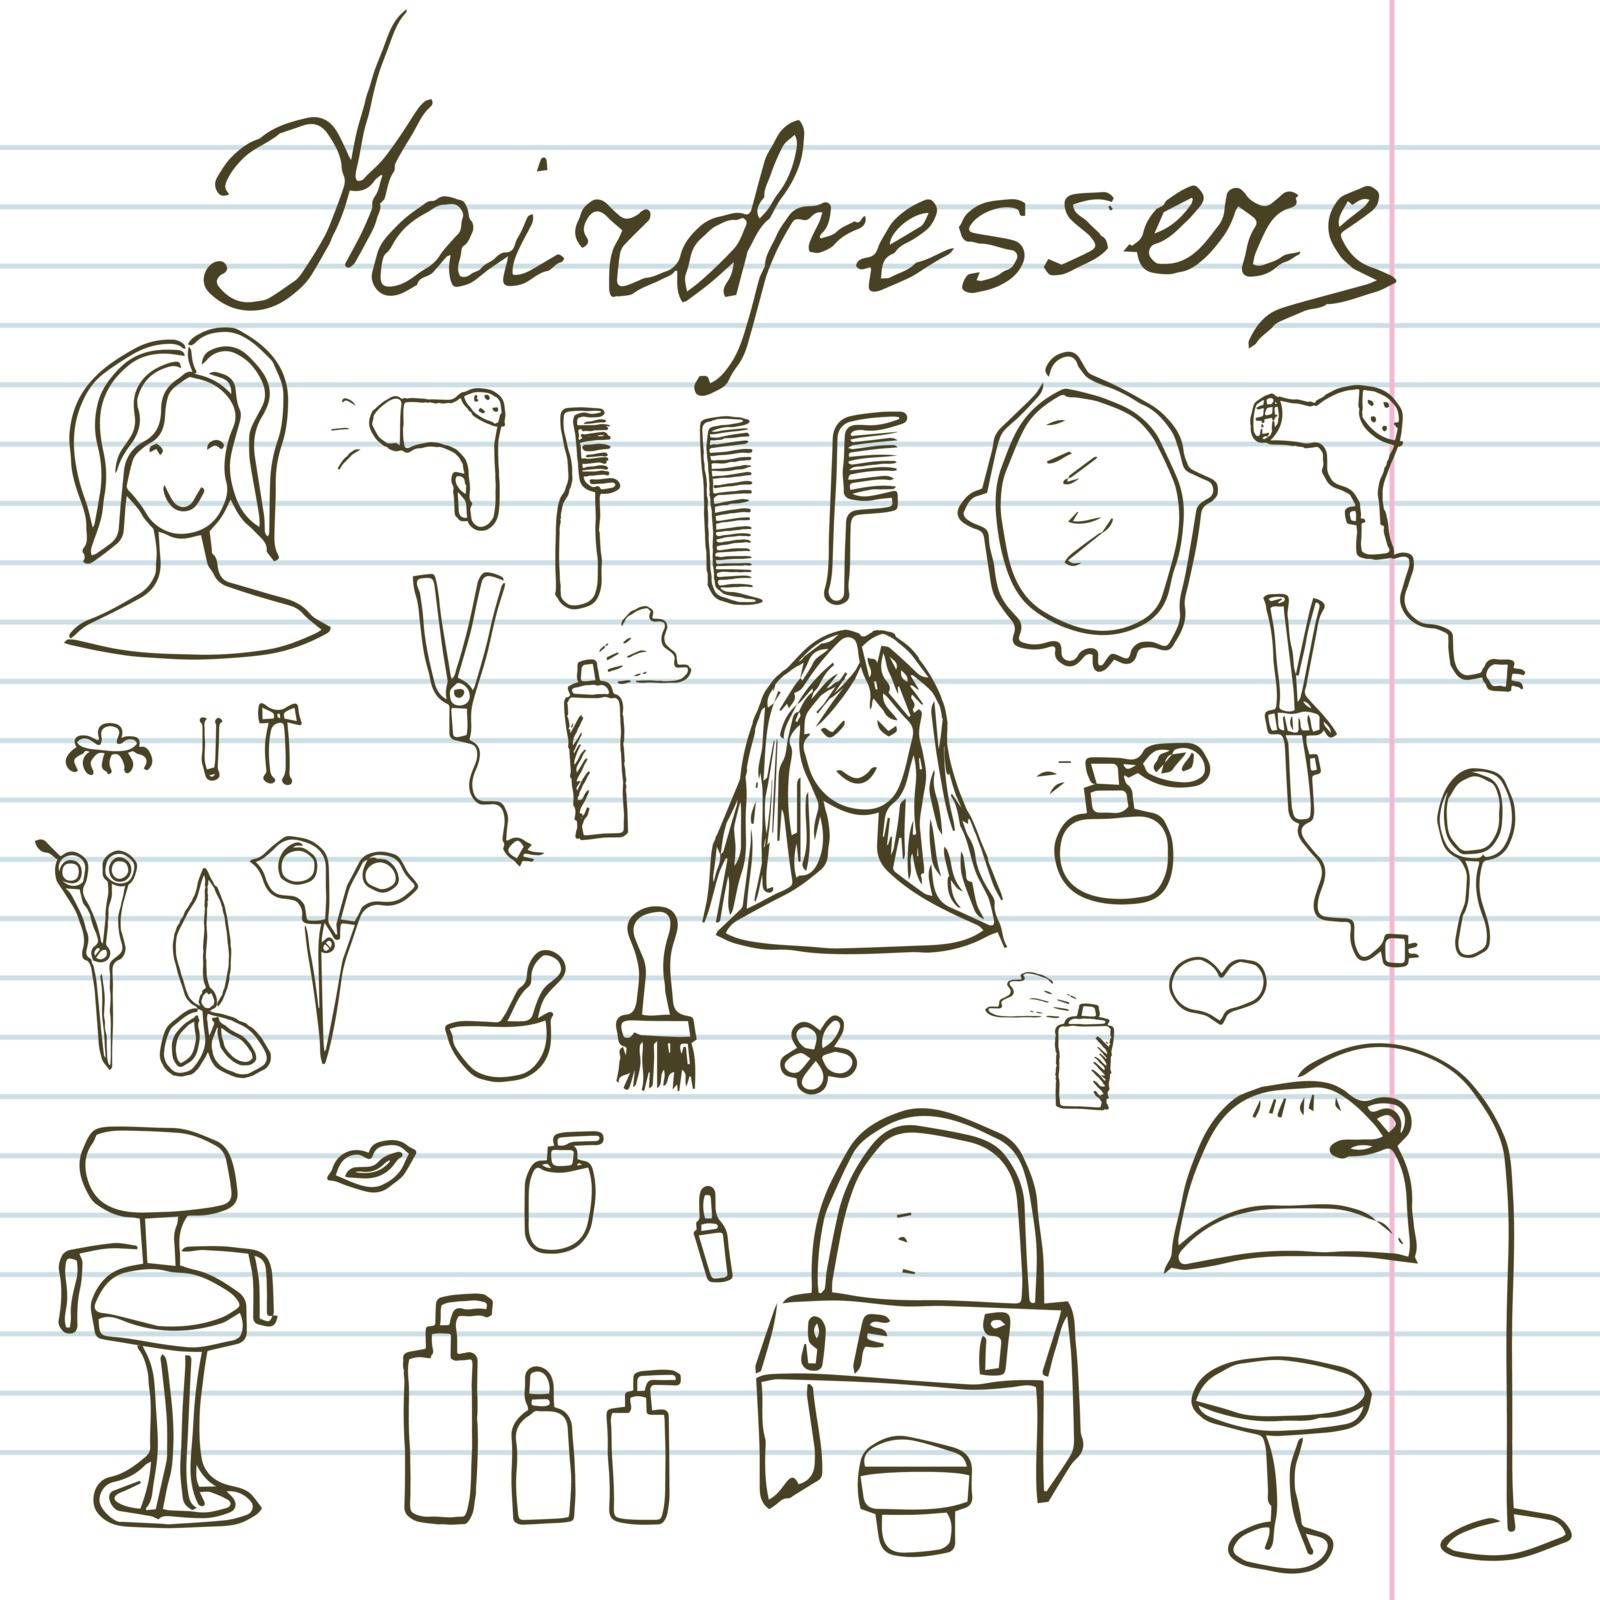 Hairdresser equipment doodles set. Hand-drawn sketch vector illustration, on paper notebook